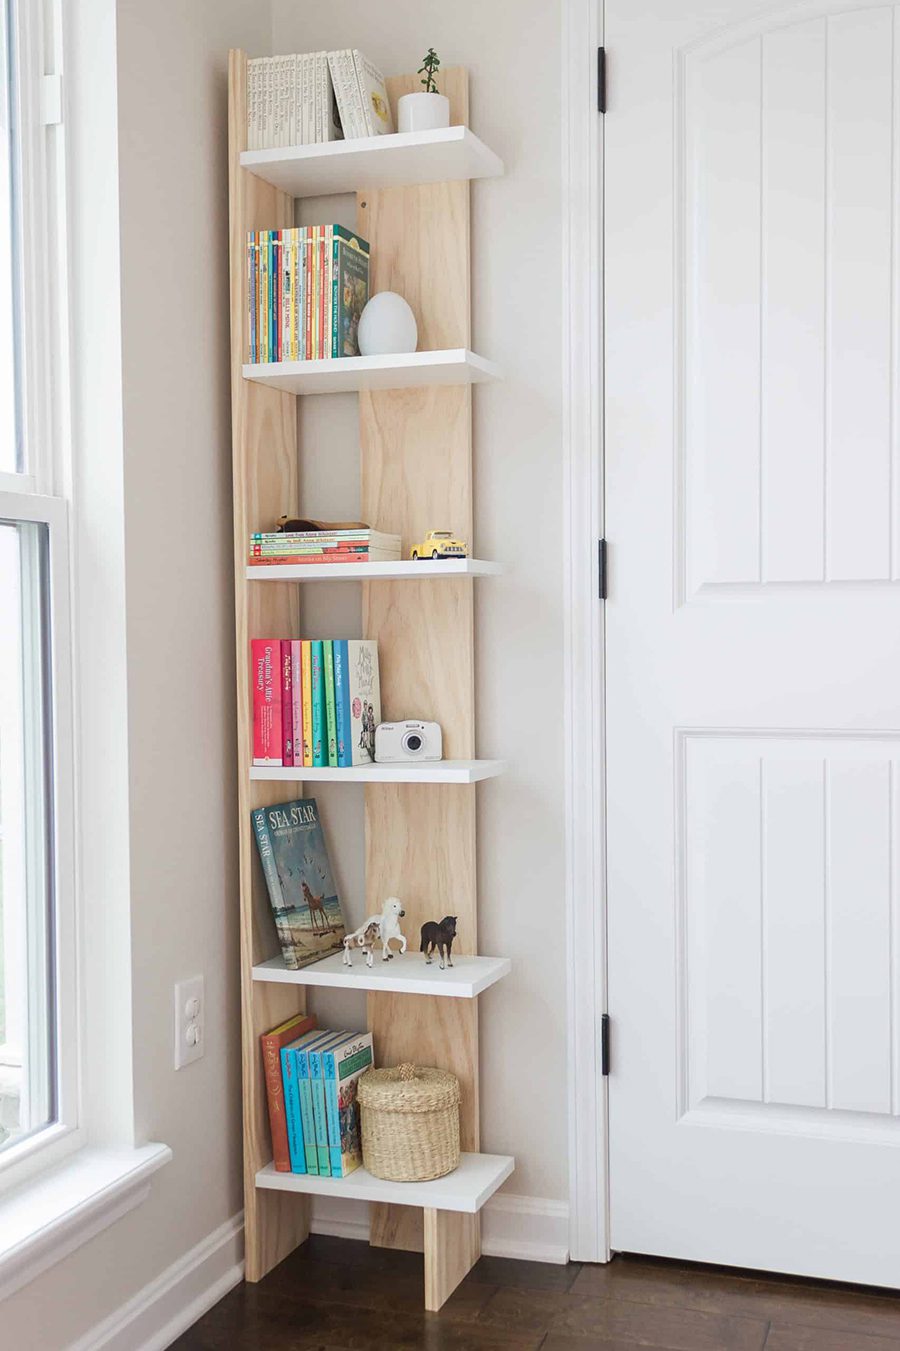 Una estantería de madera para poner en la esquina, con borde por un lado, para que los libros que se encuentran sobre ella en la fotografía tengan tope y no se caigan.